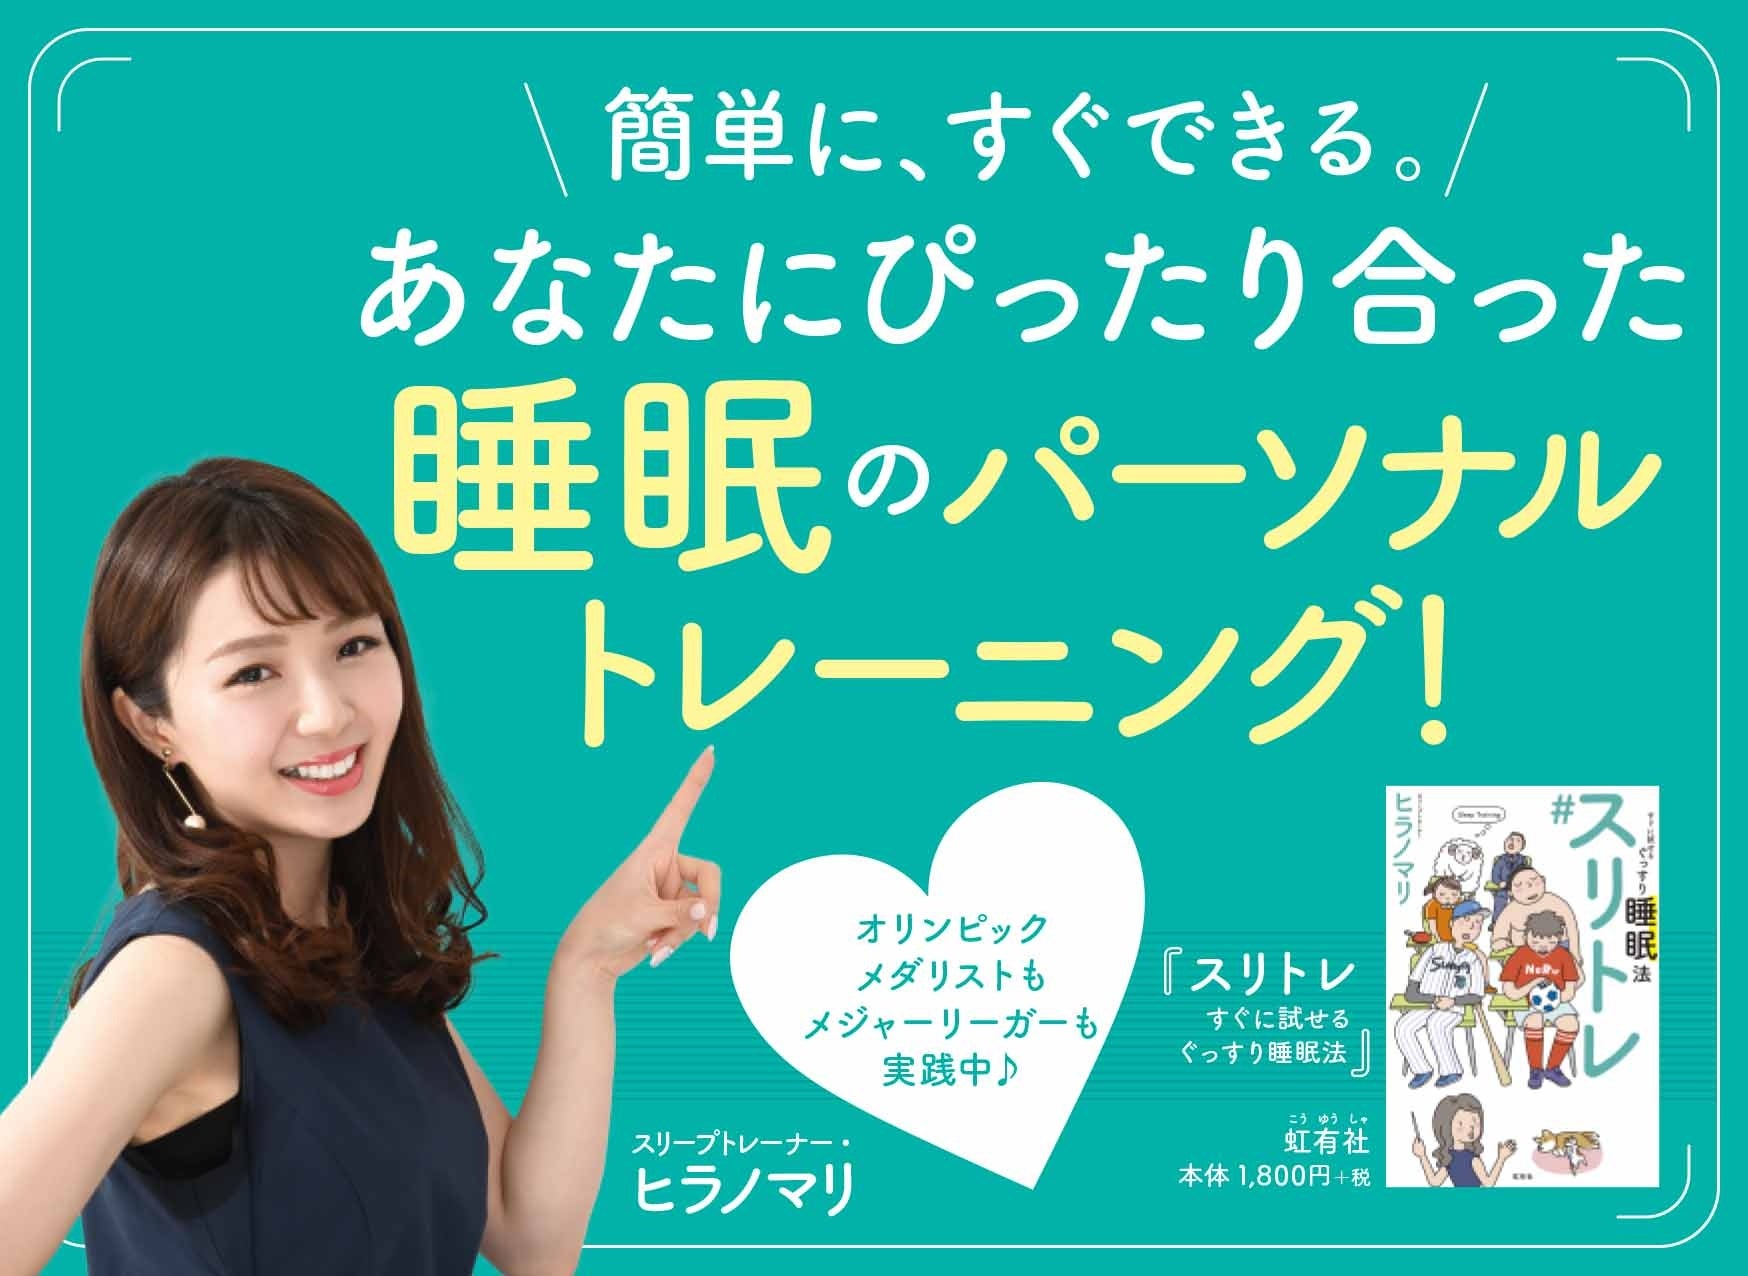 【新刊書籍】日本唯一の”スリープトレーナー”が教える「簡単に、すぐできる。あなたにぴったり合った睡眠のパーソナルトレーニング！」全国の書店・オンライン書店で販売開始